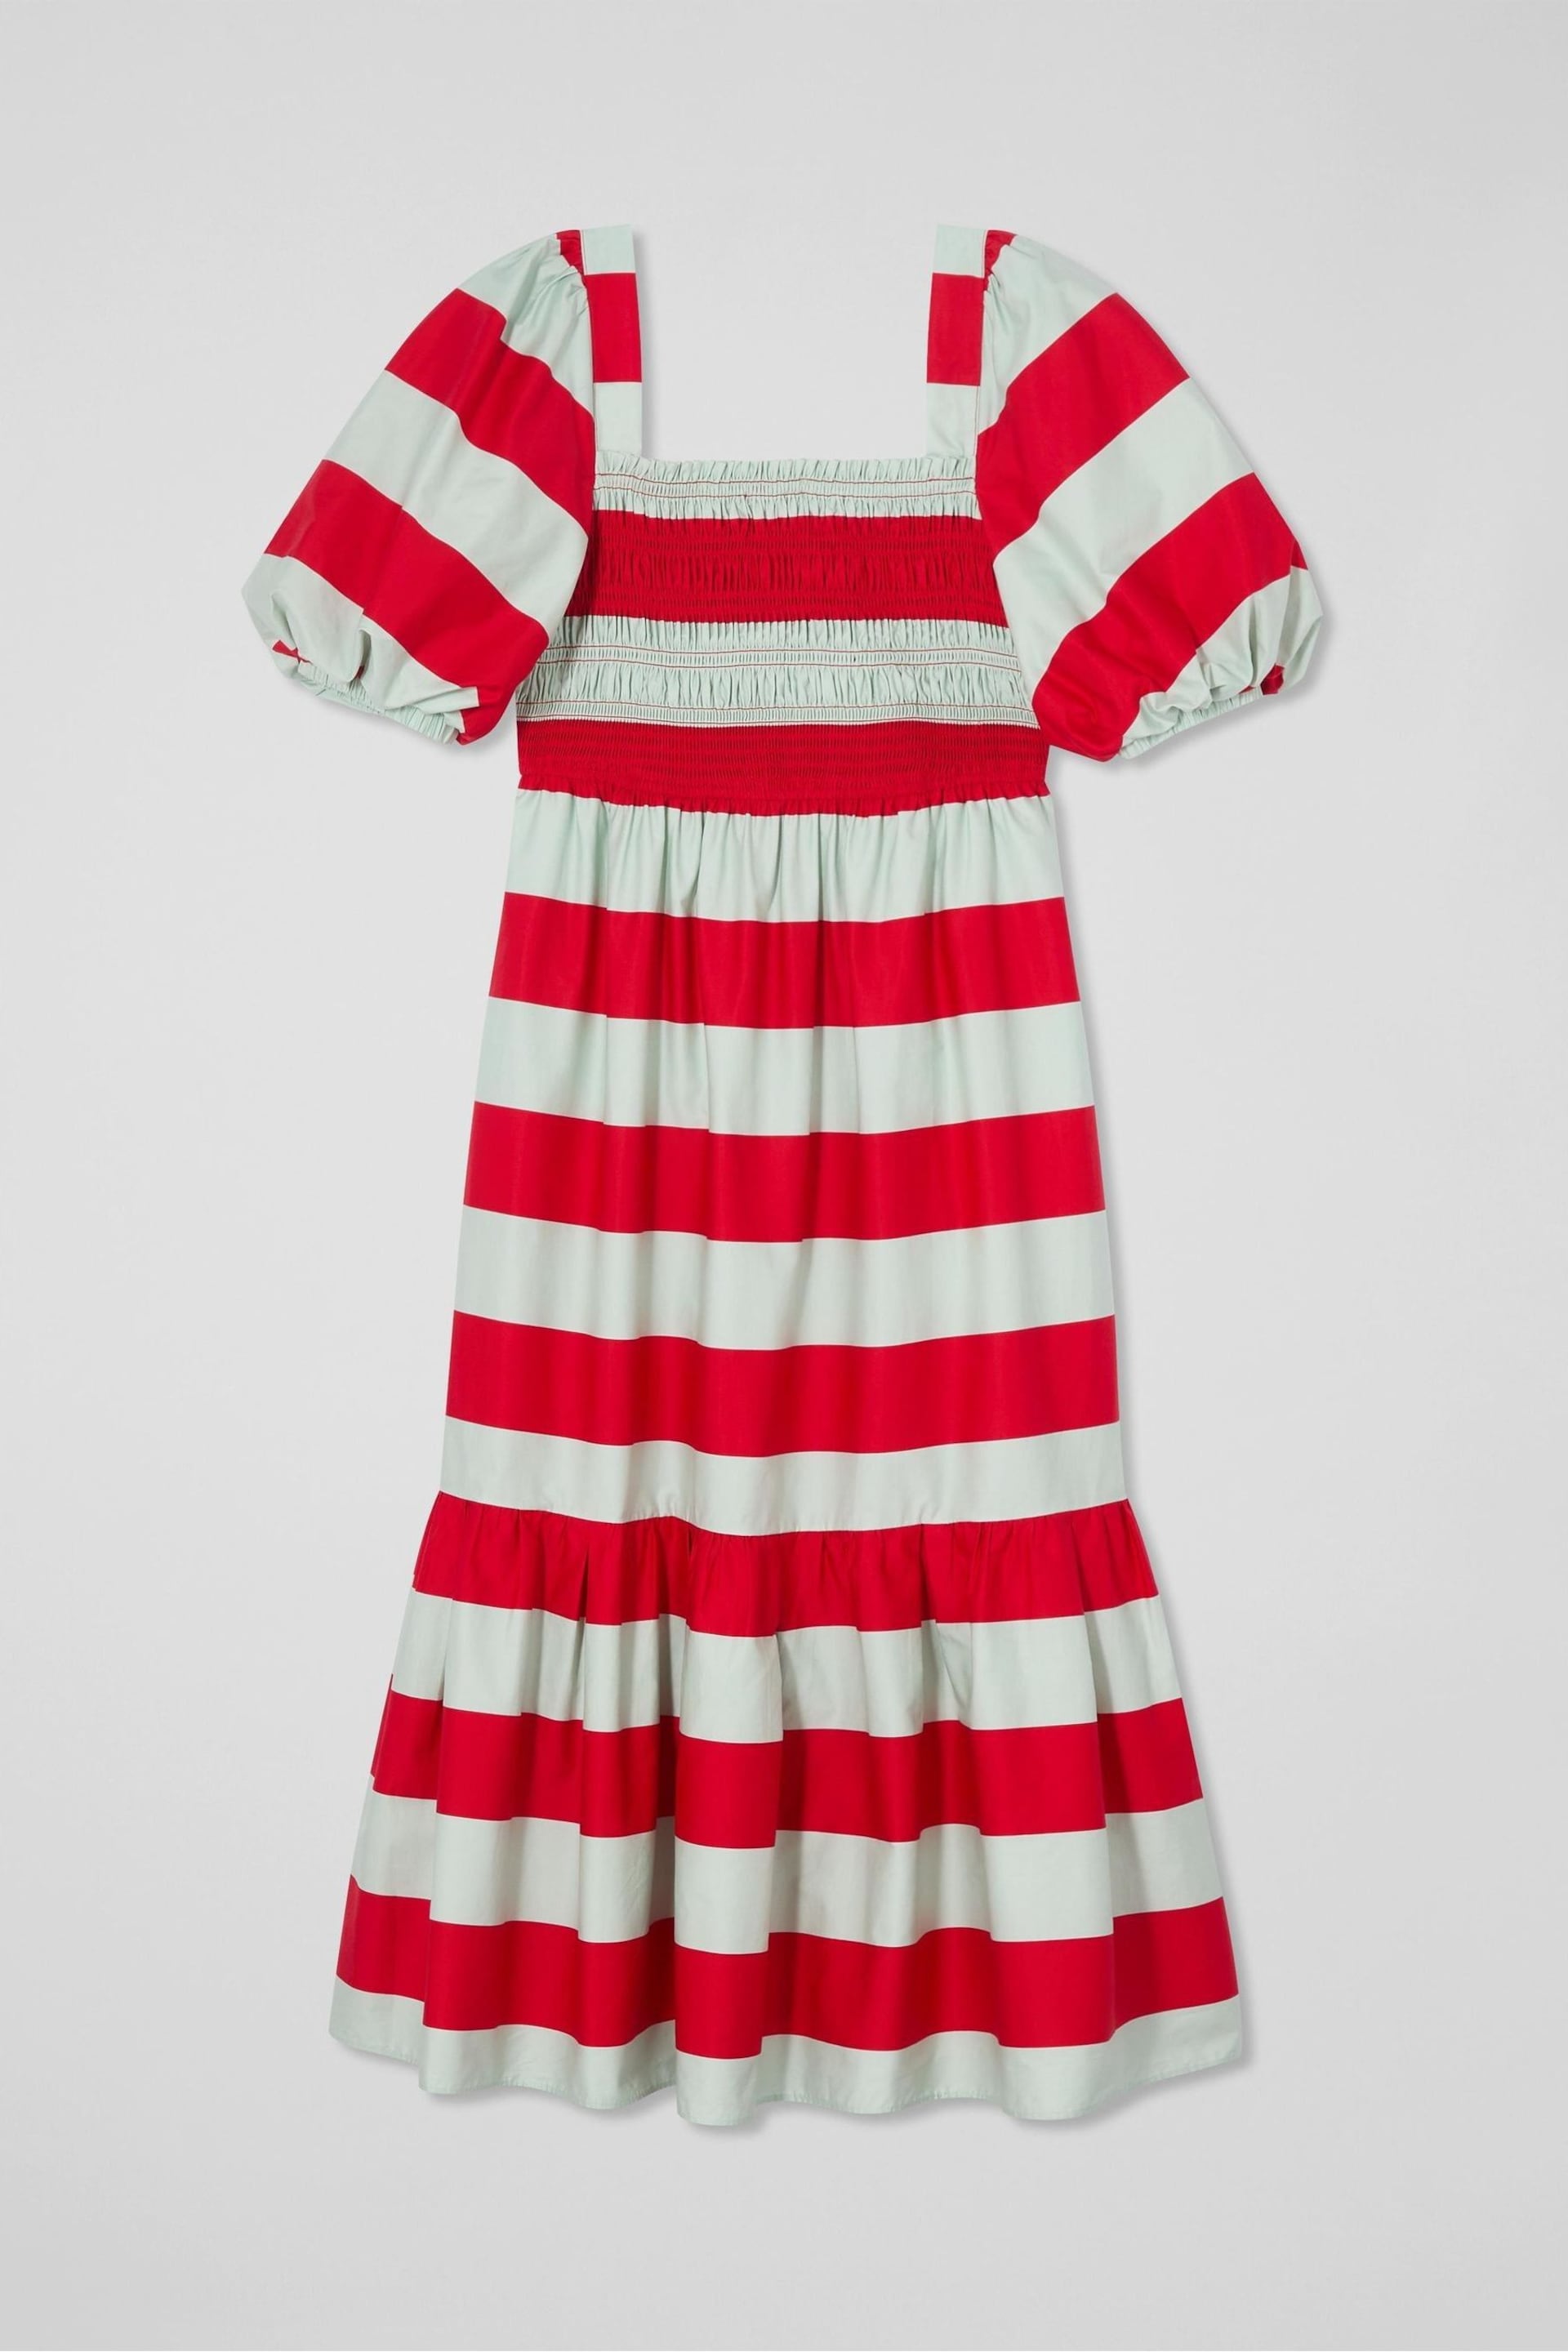 LK Bennett Ruby Stripe Print Dress - Image 5 of 5